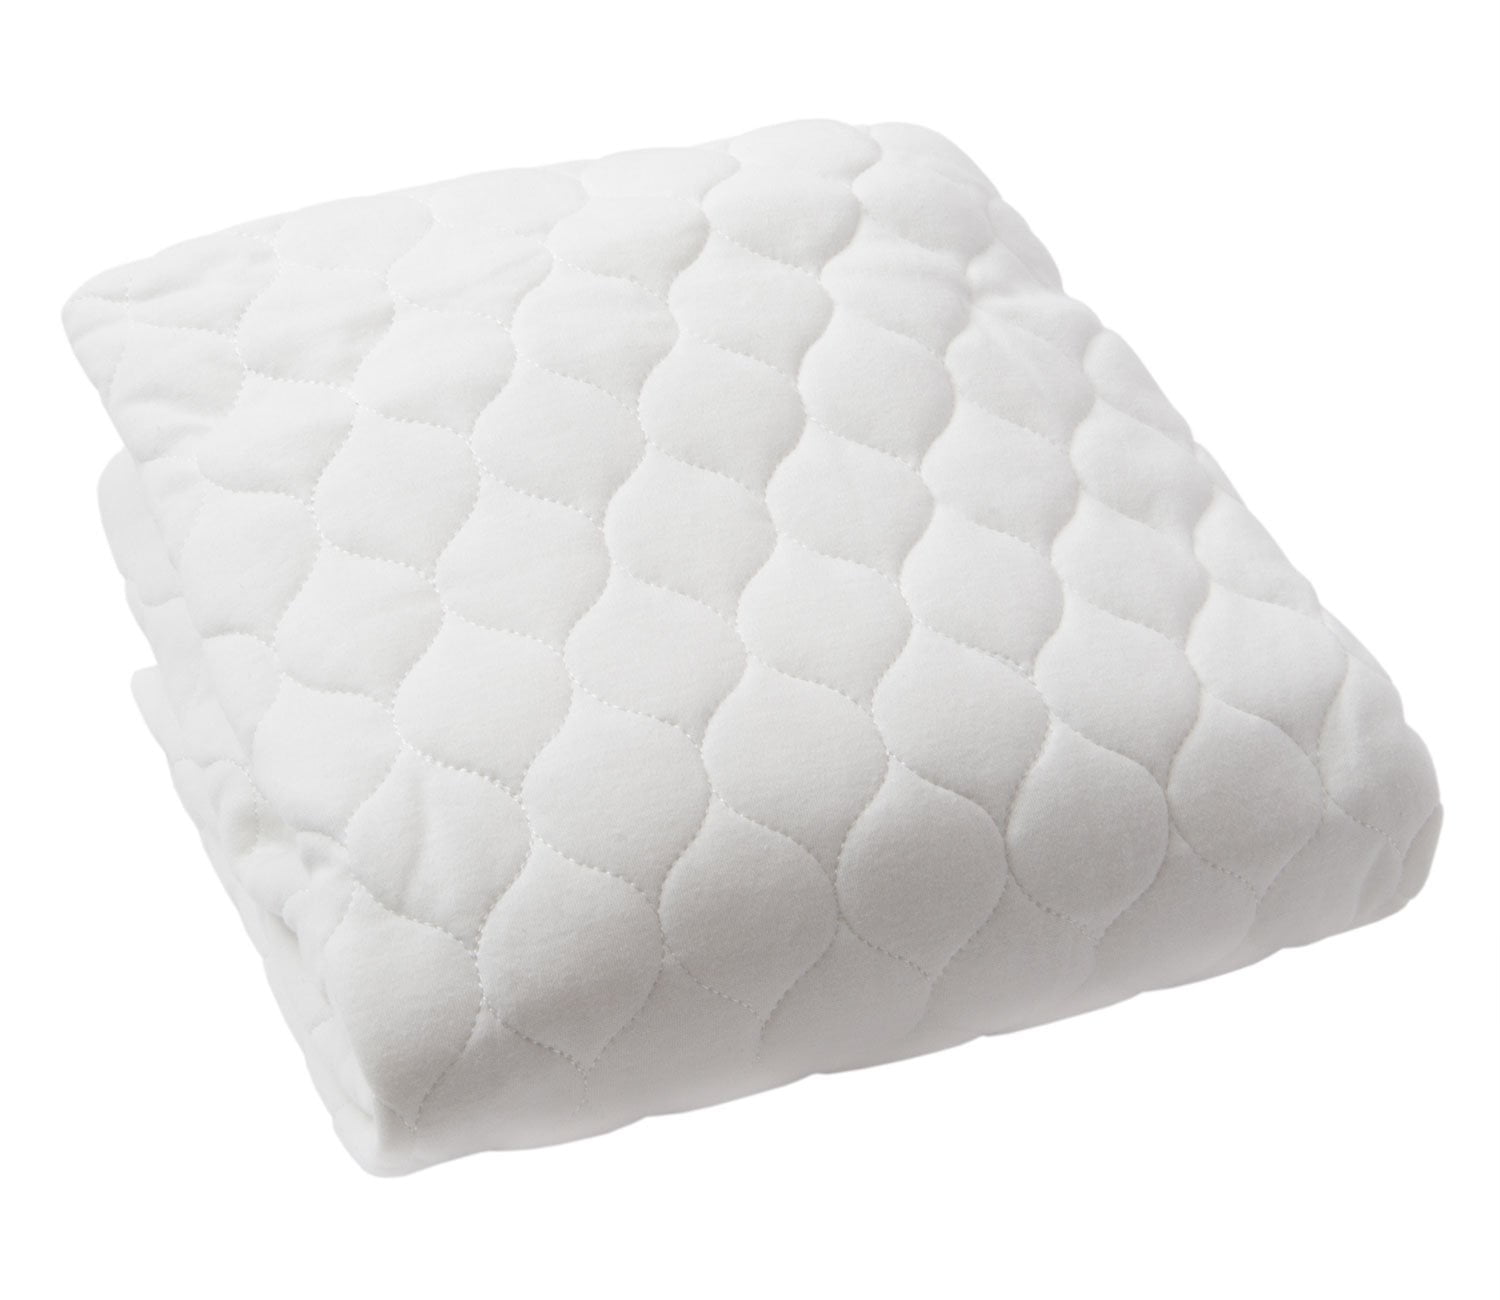 crib mattress pad walmart